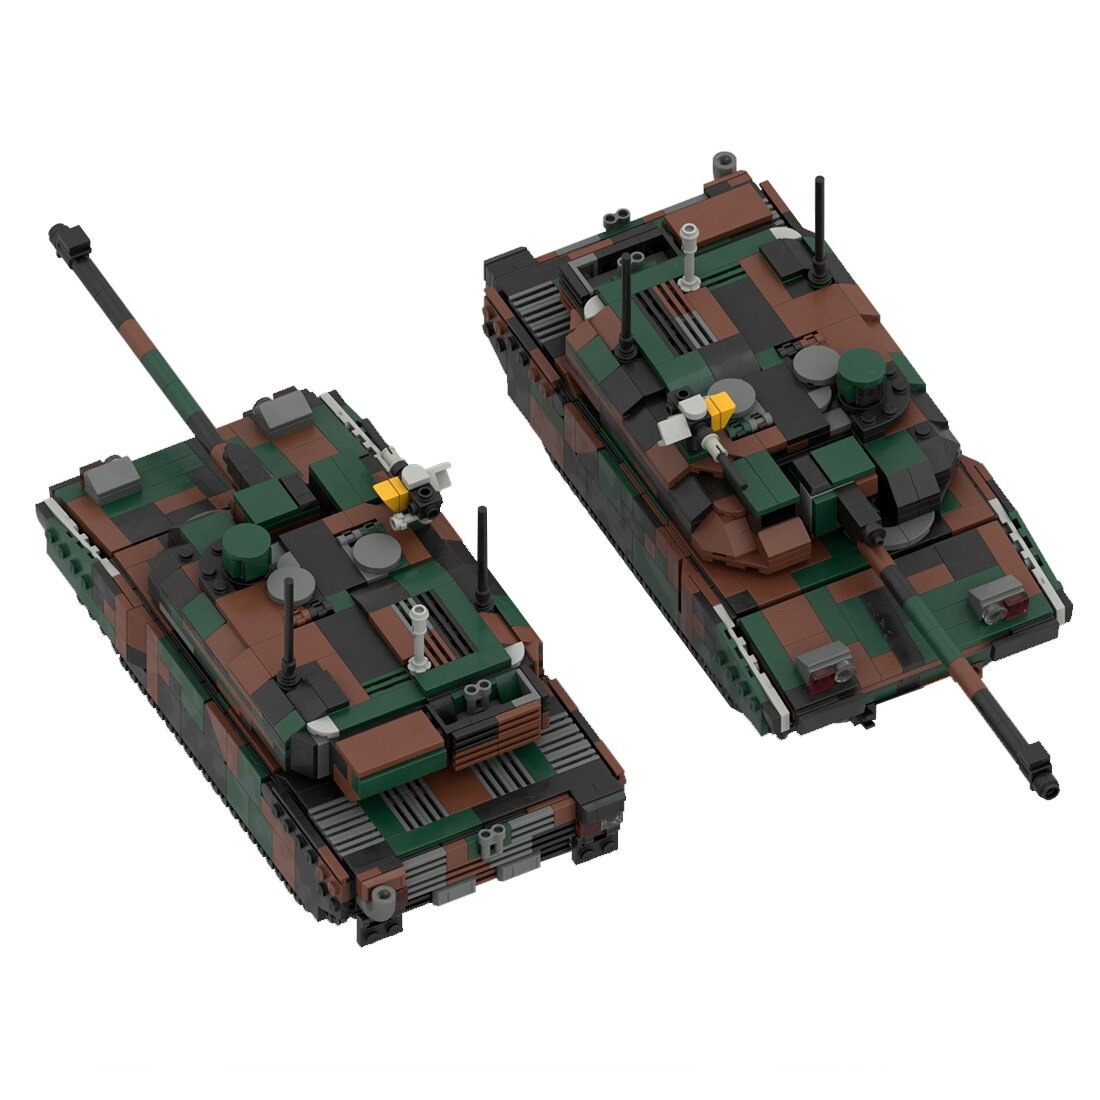 moc 34858 leclerc main battle tank model main 4 - WANGE Block